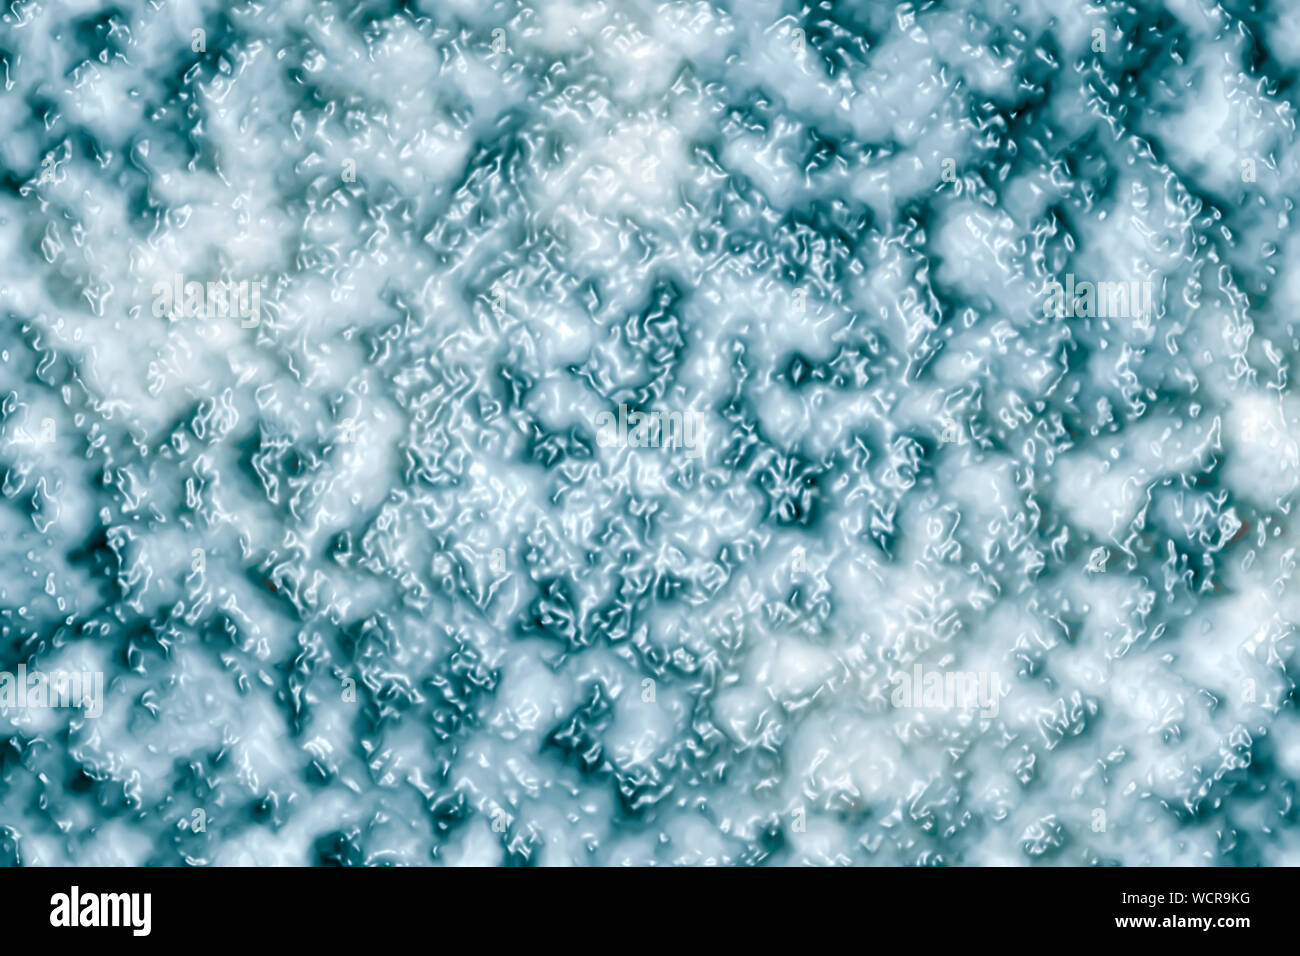 Biofilm - Un microbioma - Resumen ilustración científica Foto de stock